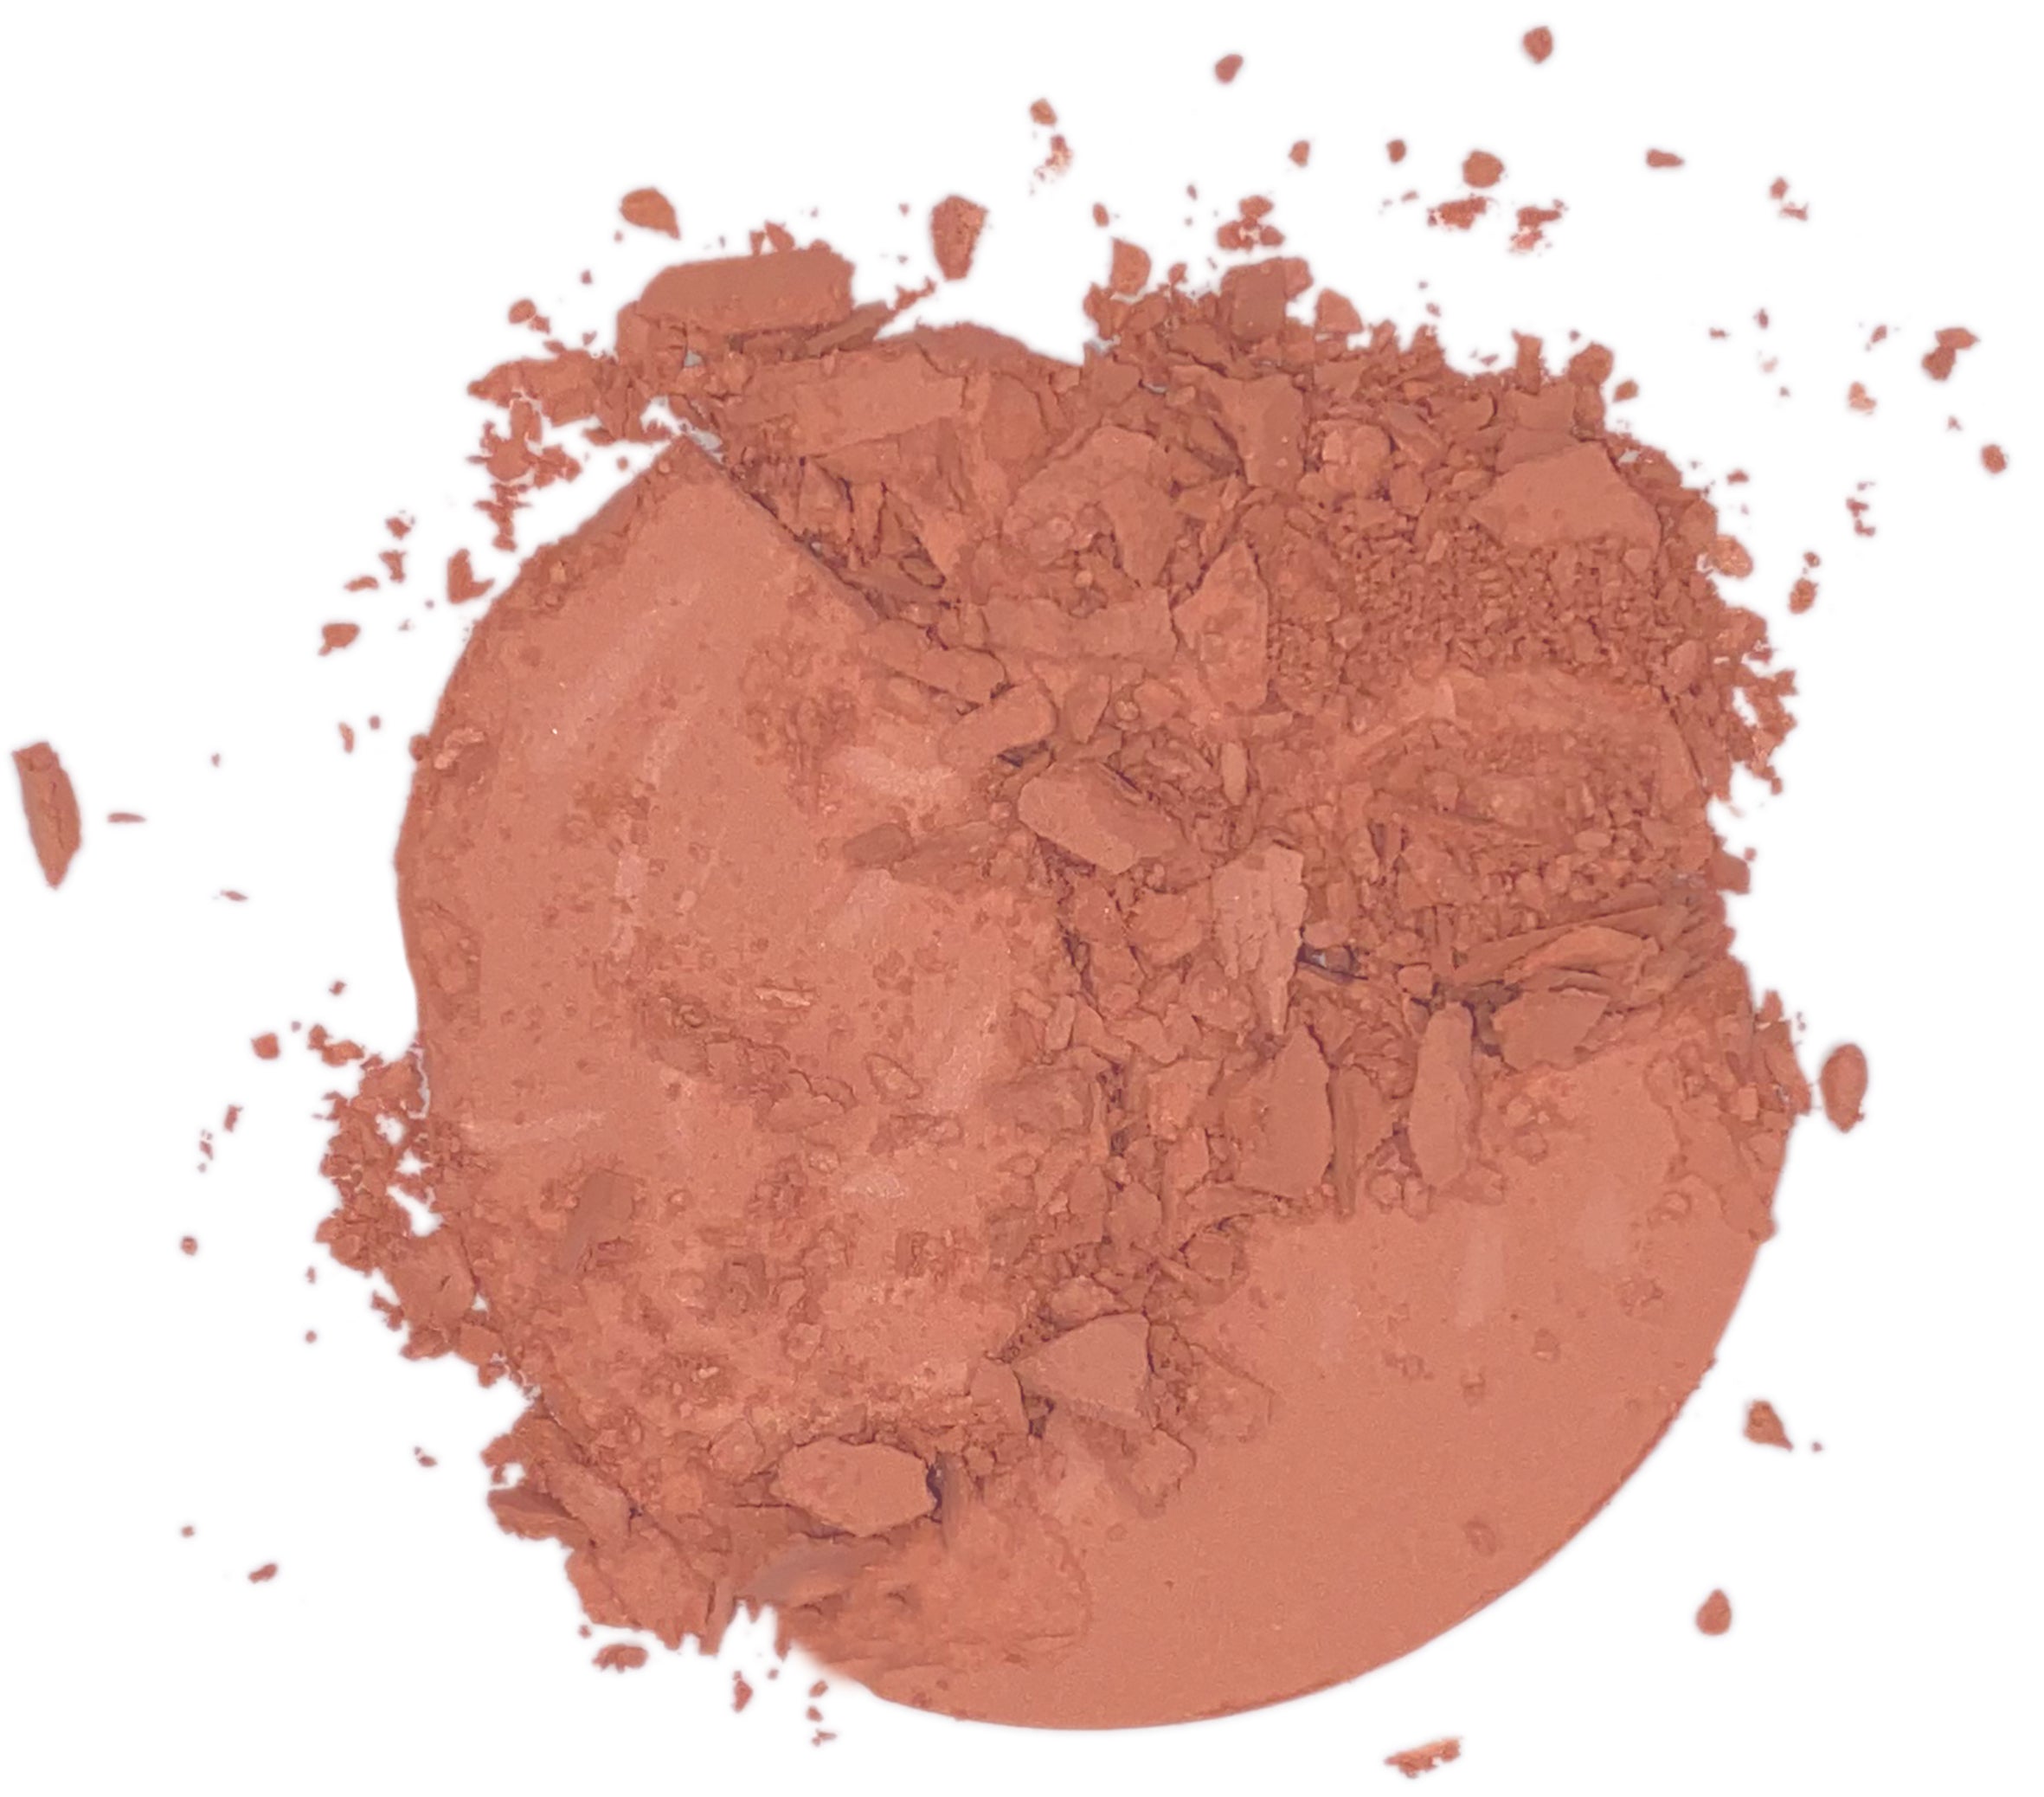 Lavera Velvet Blush Powder Rosy Peach 01